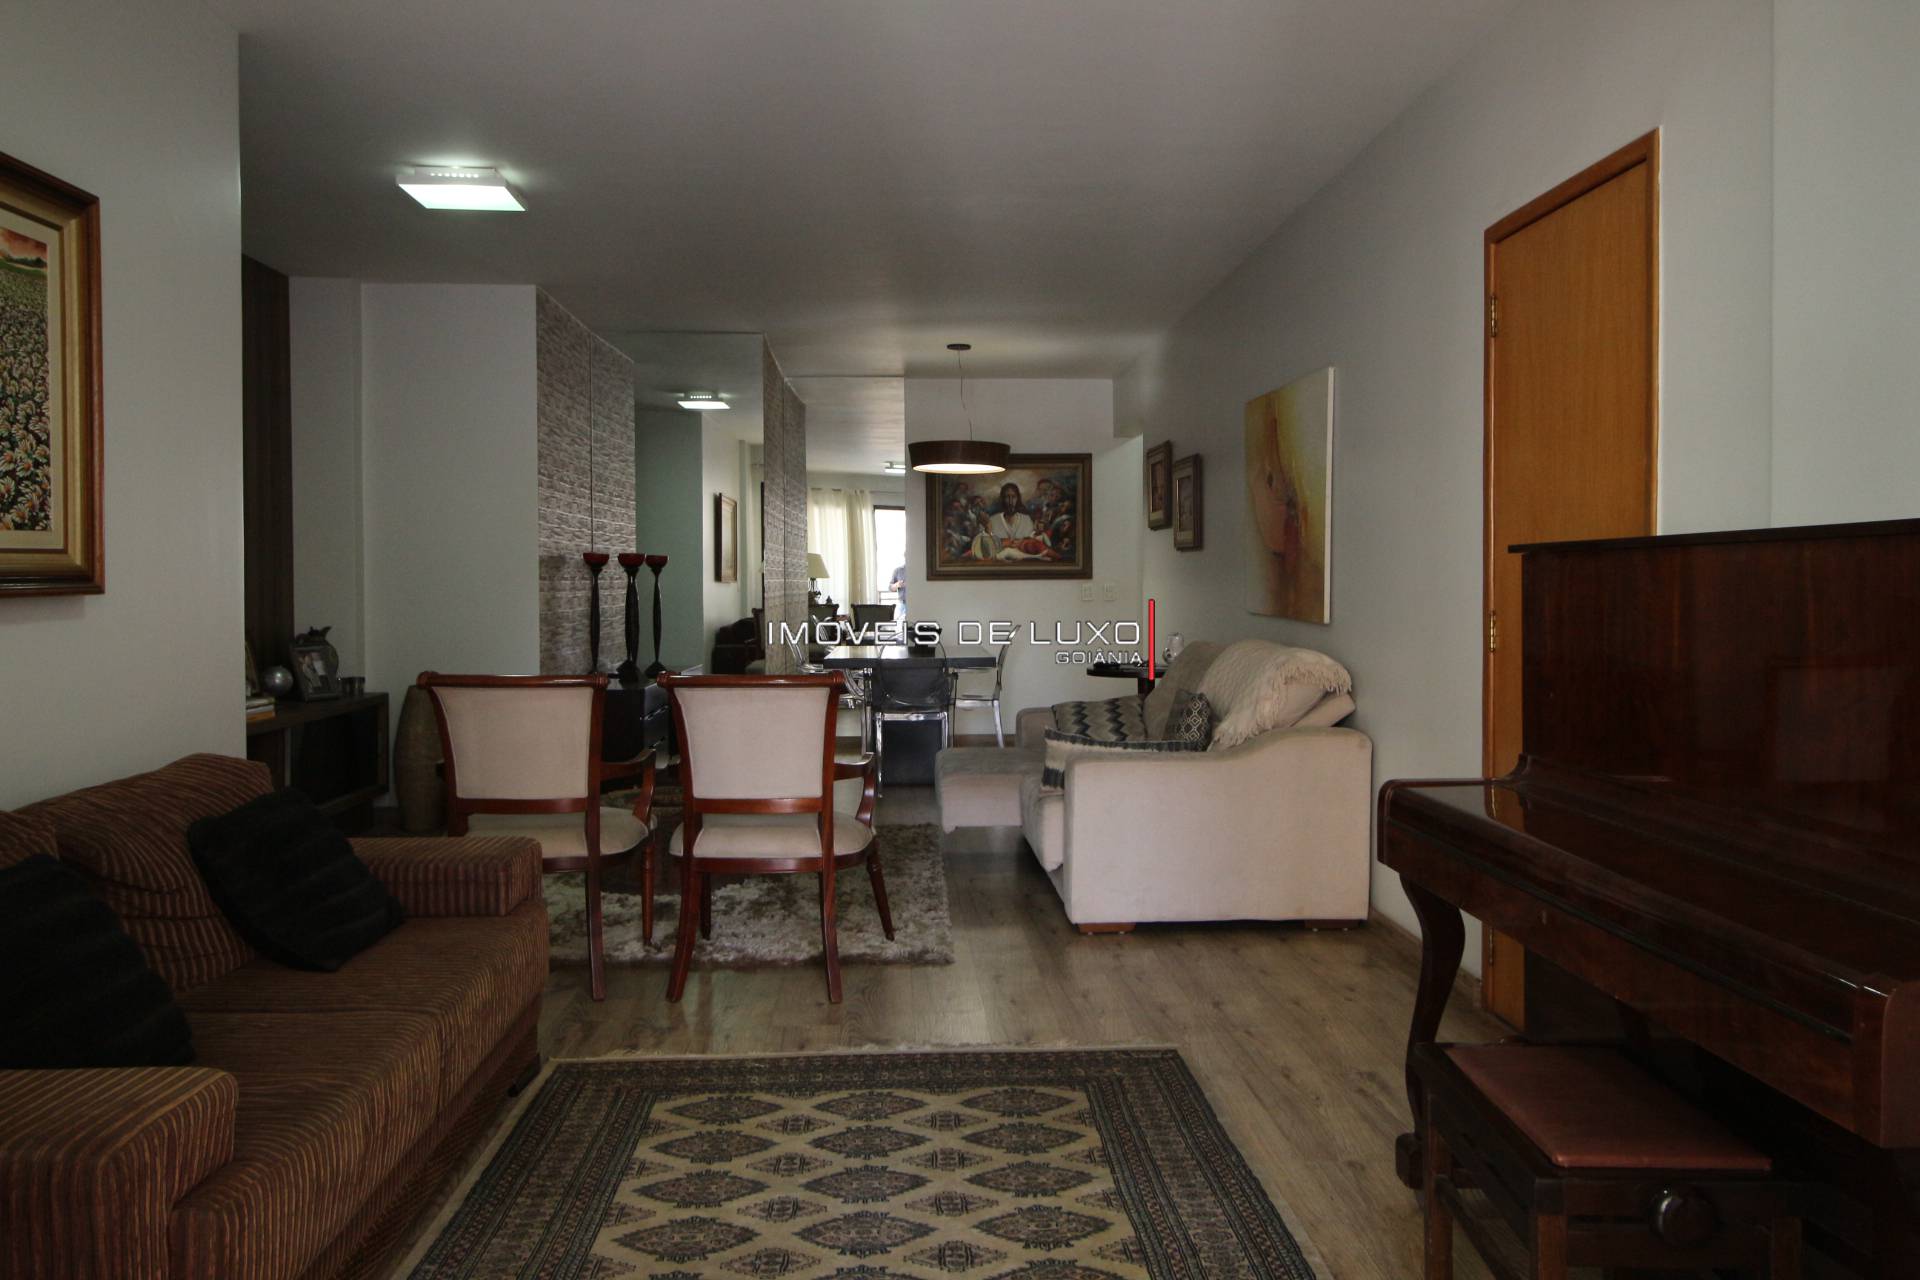 Imóveis de Luxo - Apartamento 4 suítes, 1 por Andar no Setor Bueno    